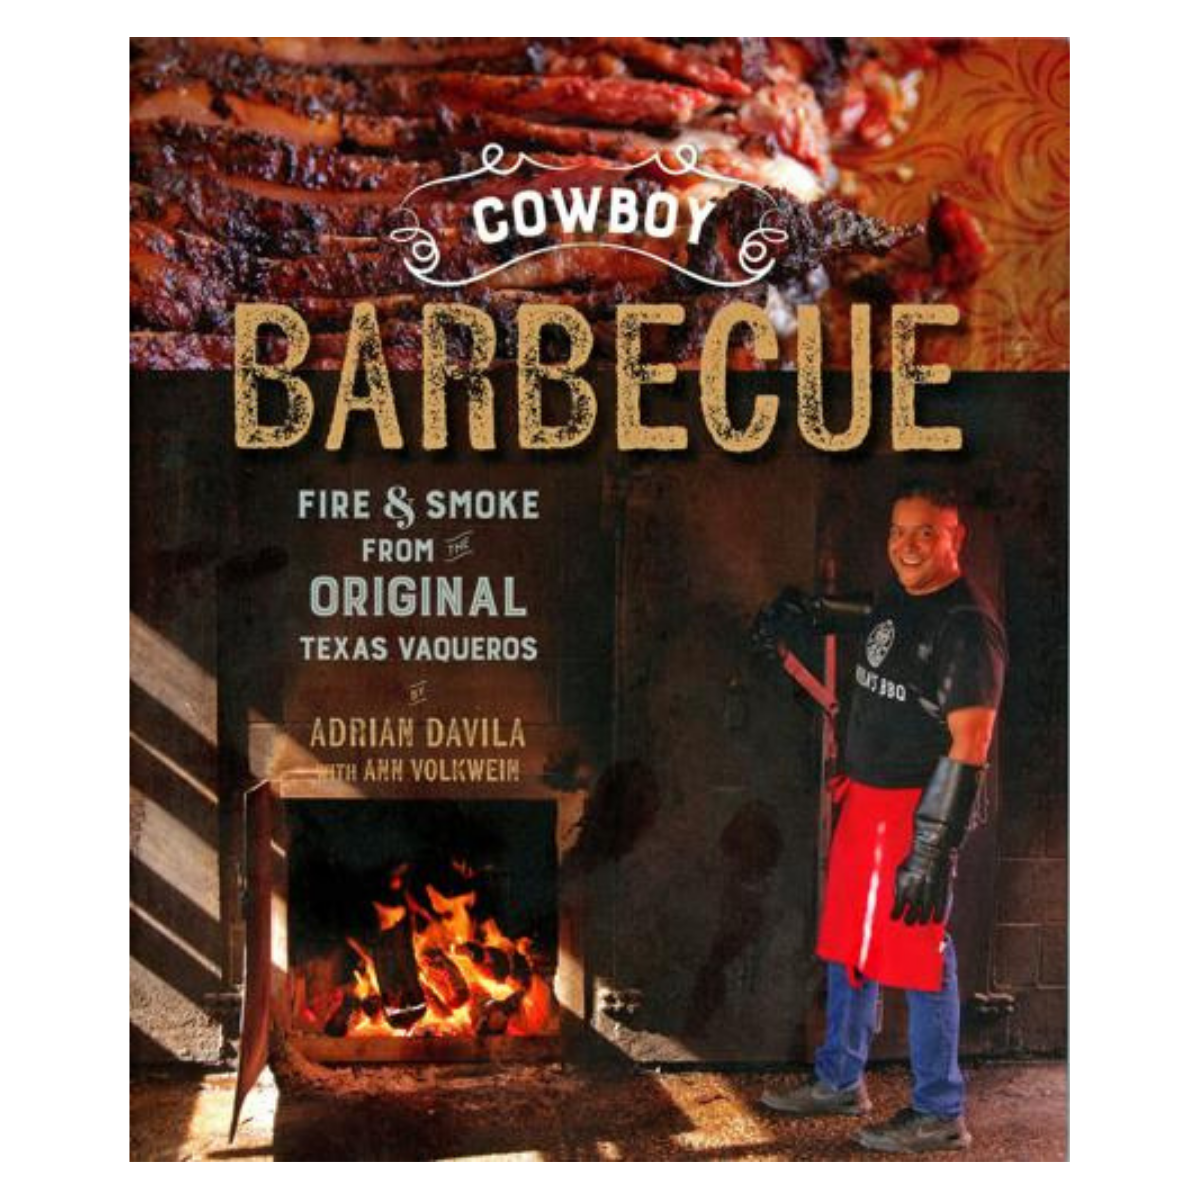 Cowboy Barbeque: Fire & Smoke from the Original Texas Vaqueros